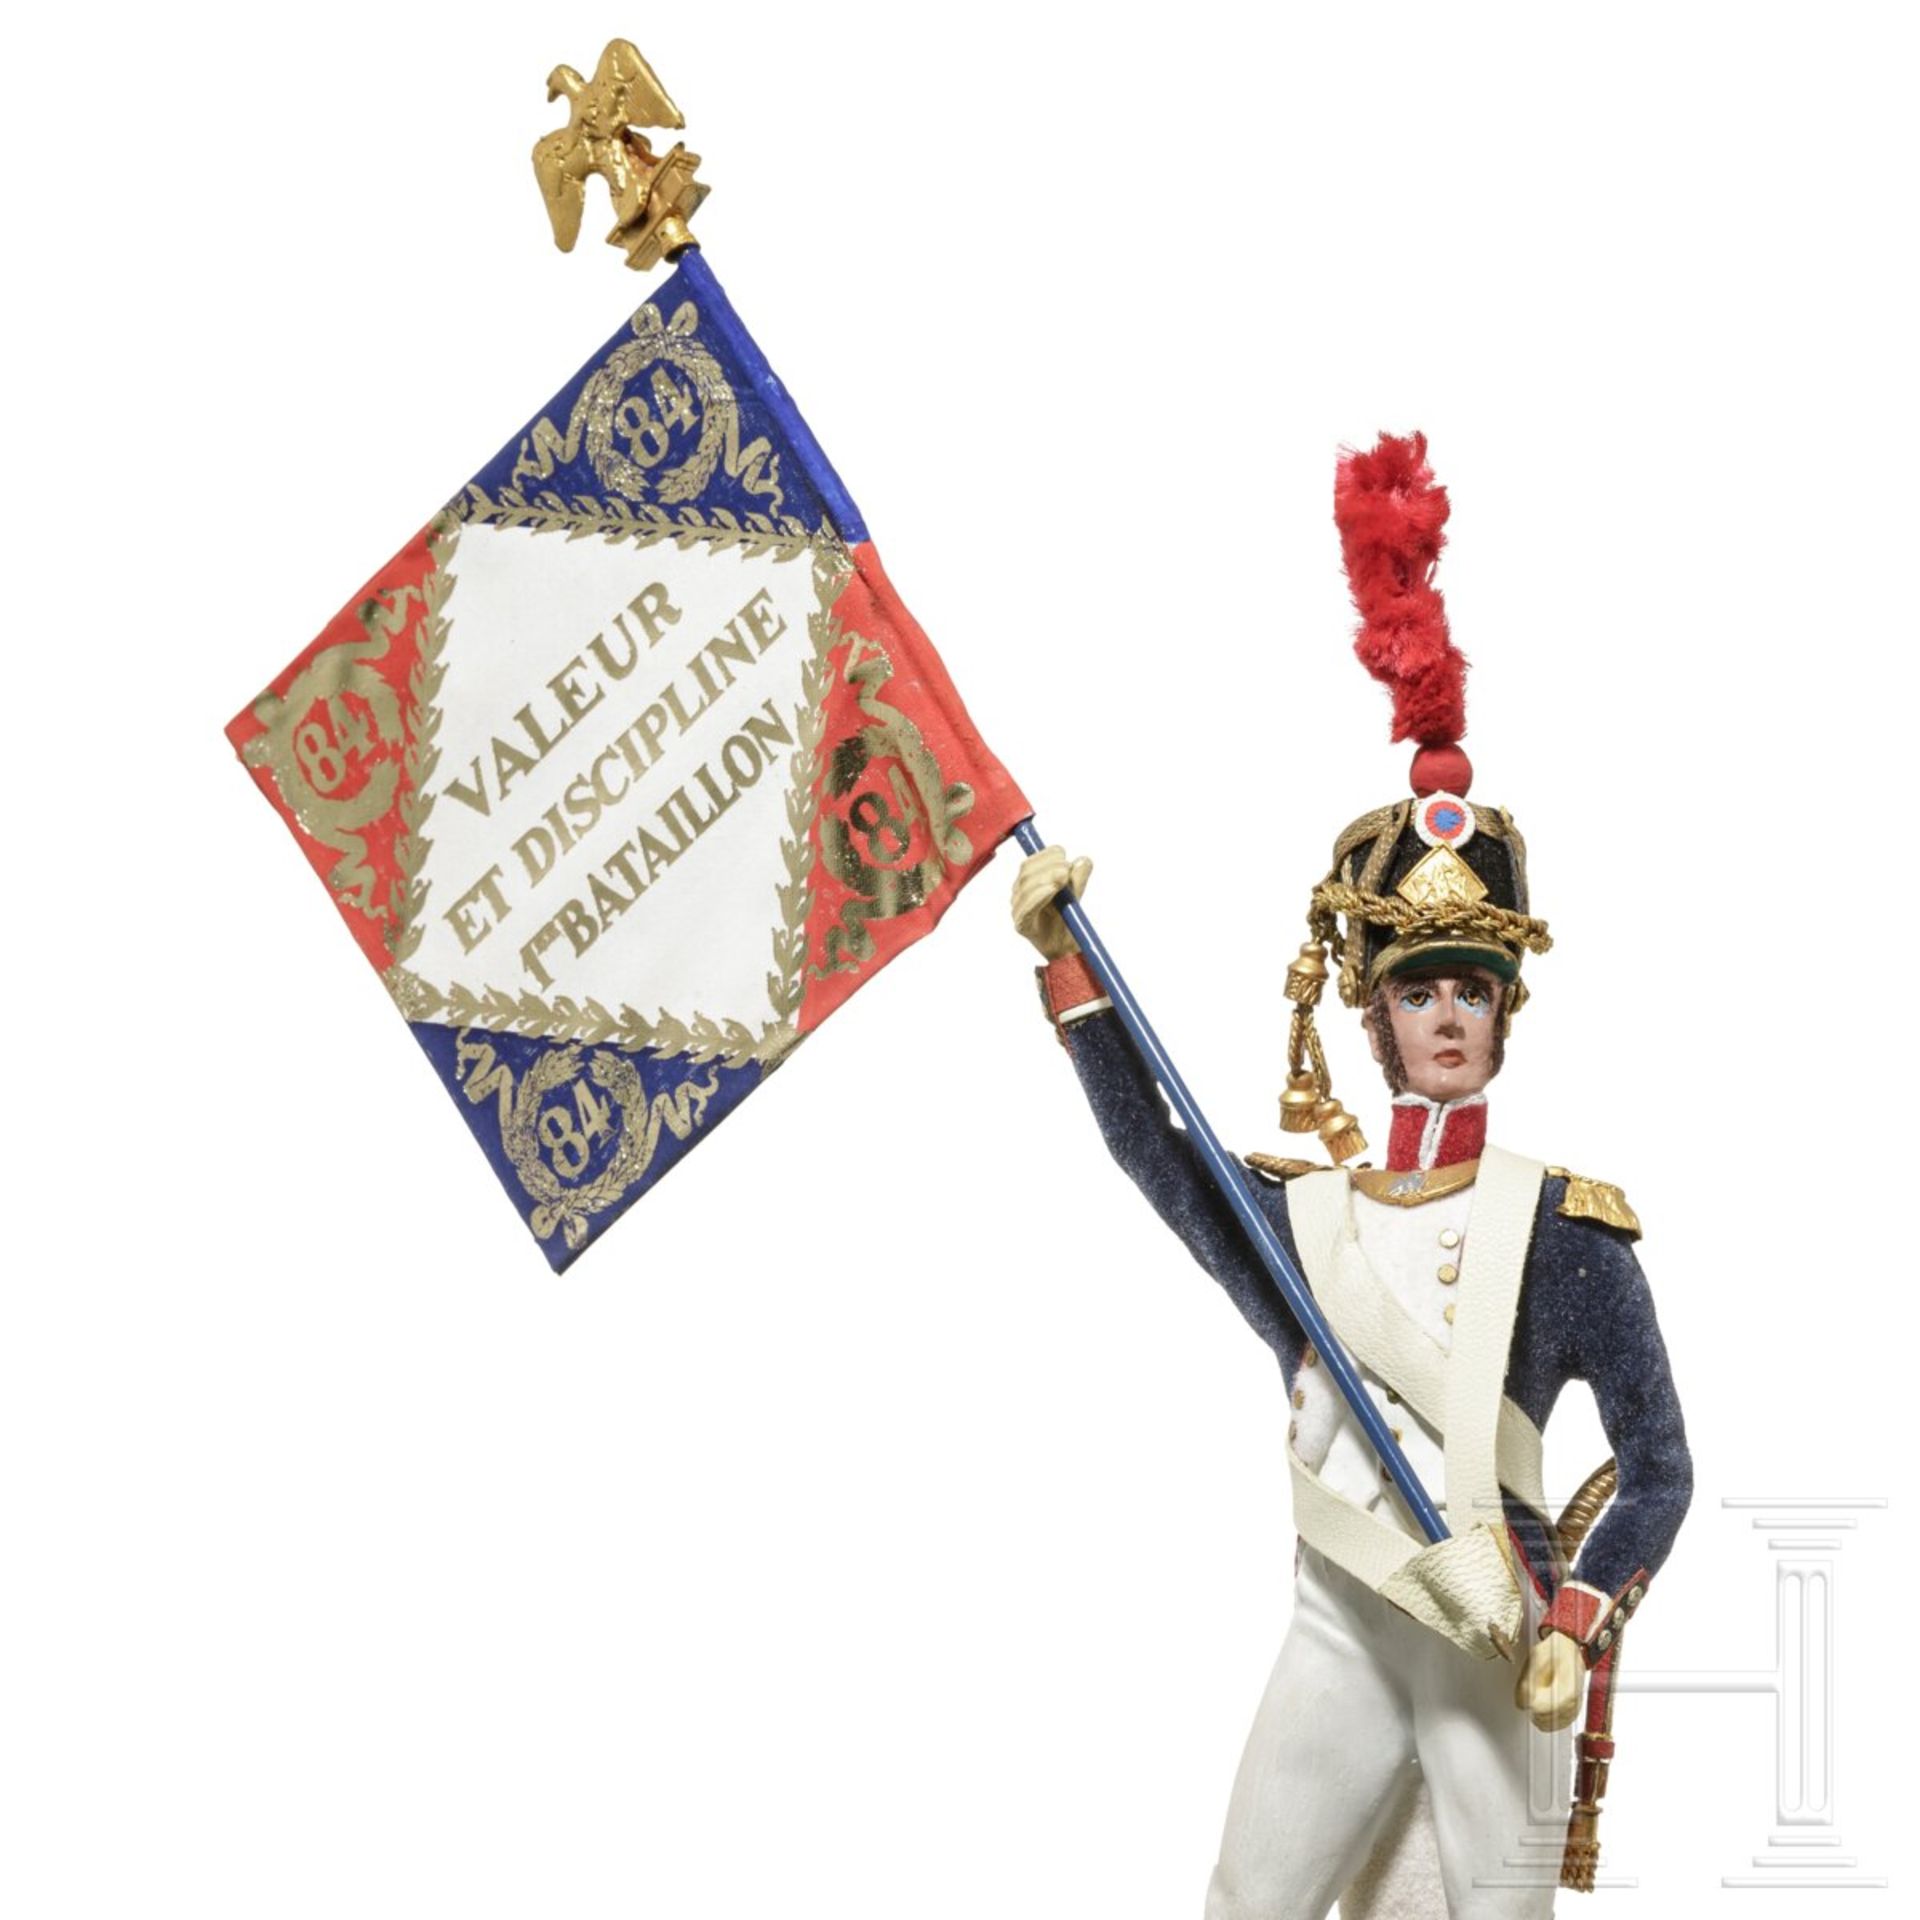 Offizier der Linieninfanterie um 1810 als Fahnenträger - Uniformfigur von Marcel Riffet, 20. Jhdt. - Image 5 of 5